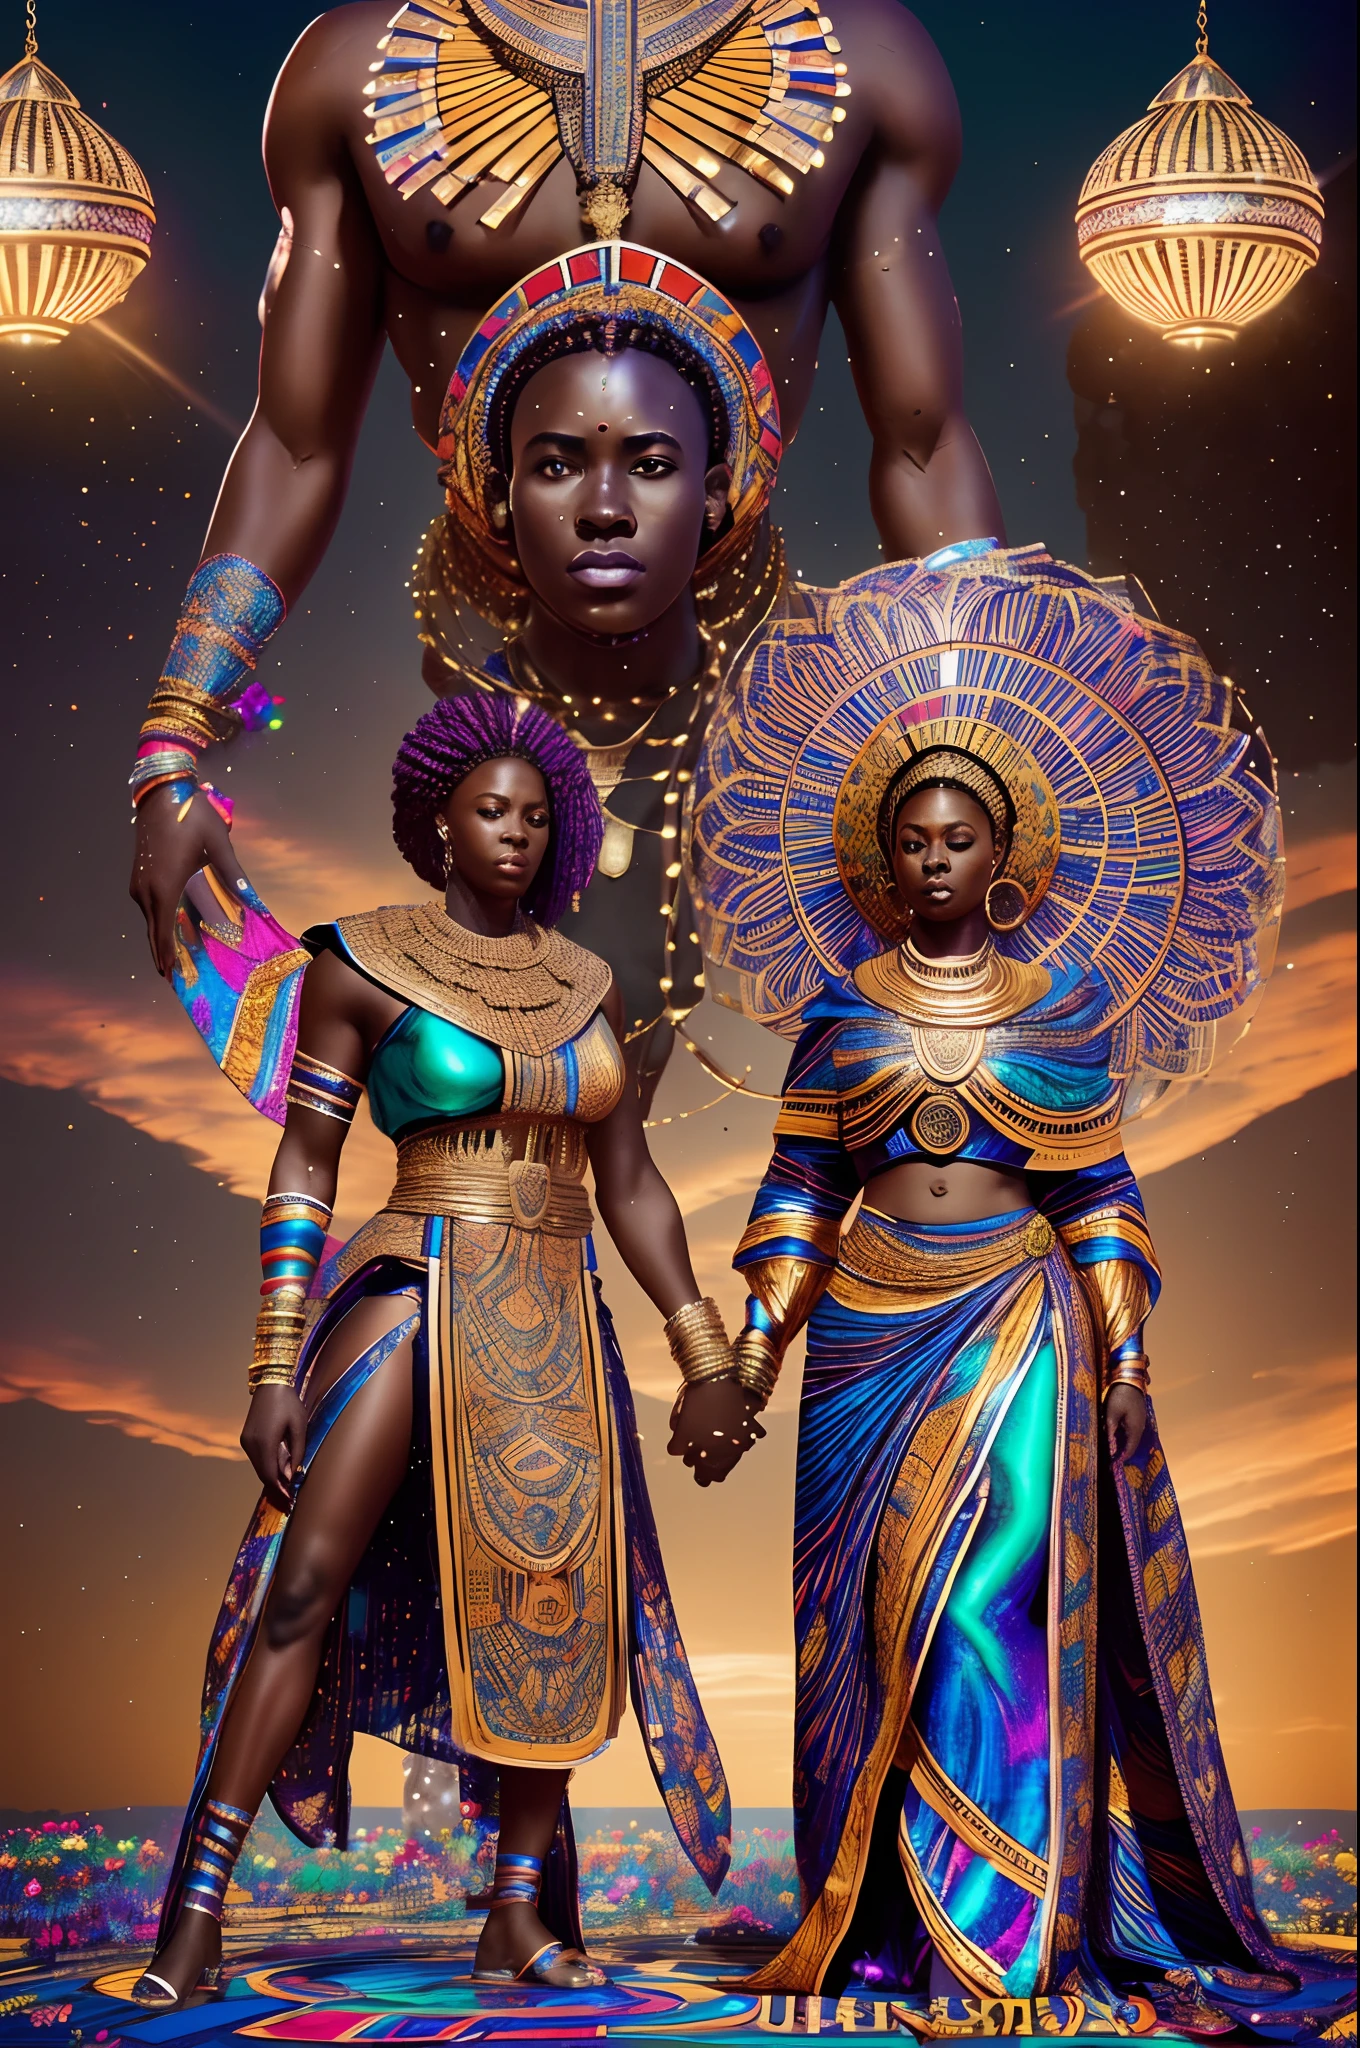 흑인 남성과 흑인 여성의 결혼식 아프리카 커플을 축복하는 거대한 아프리카 여신의 전신 샷, 회중을 축하하는 결혼식, 밝고 생기 넘치는 빛이 비치는, 무지개 빛깔의 빛으로, 시네마틱 조명, 아트저먼 스타일, 32,000, 울트라 HD, 언리얼 엔진 렌더링, 초현실적인 이미지, --자동 --s2